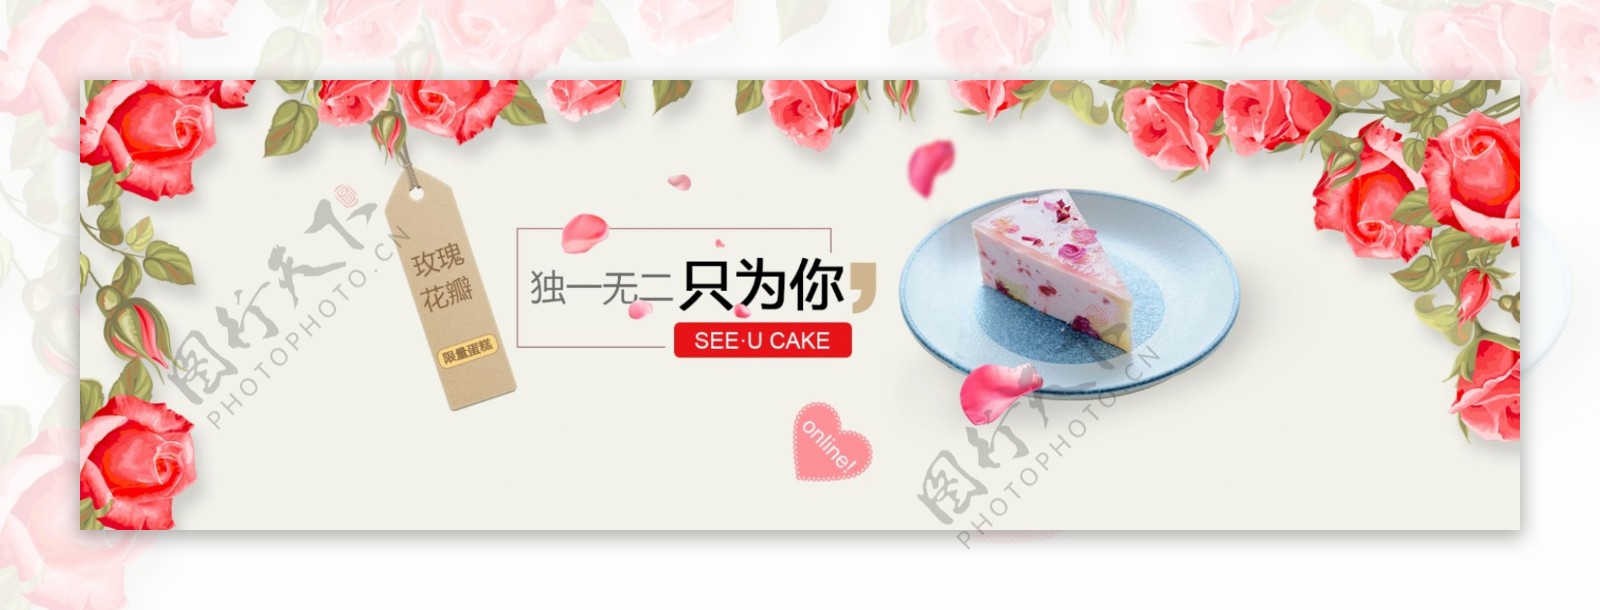 芝士蛋糕促销活动banner